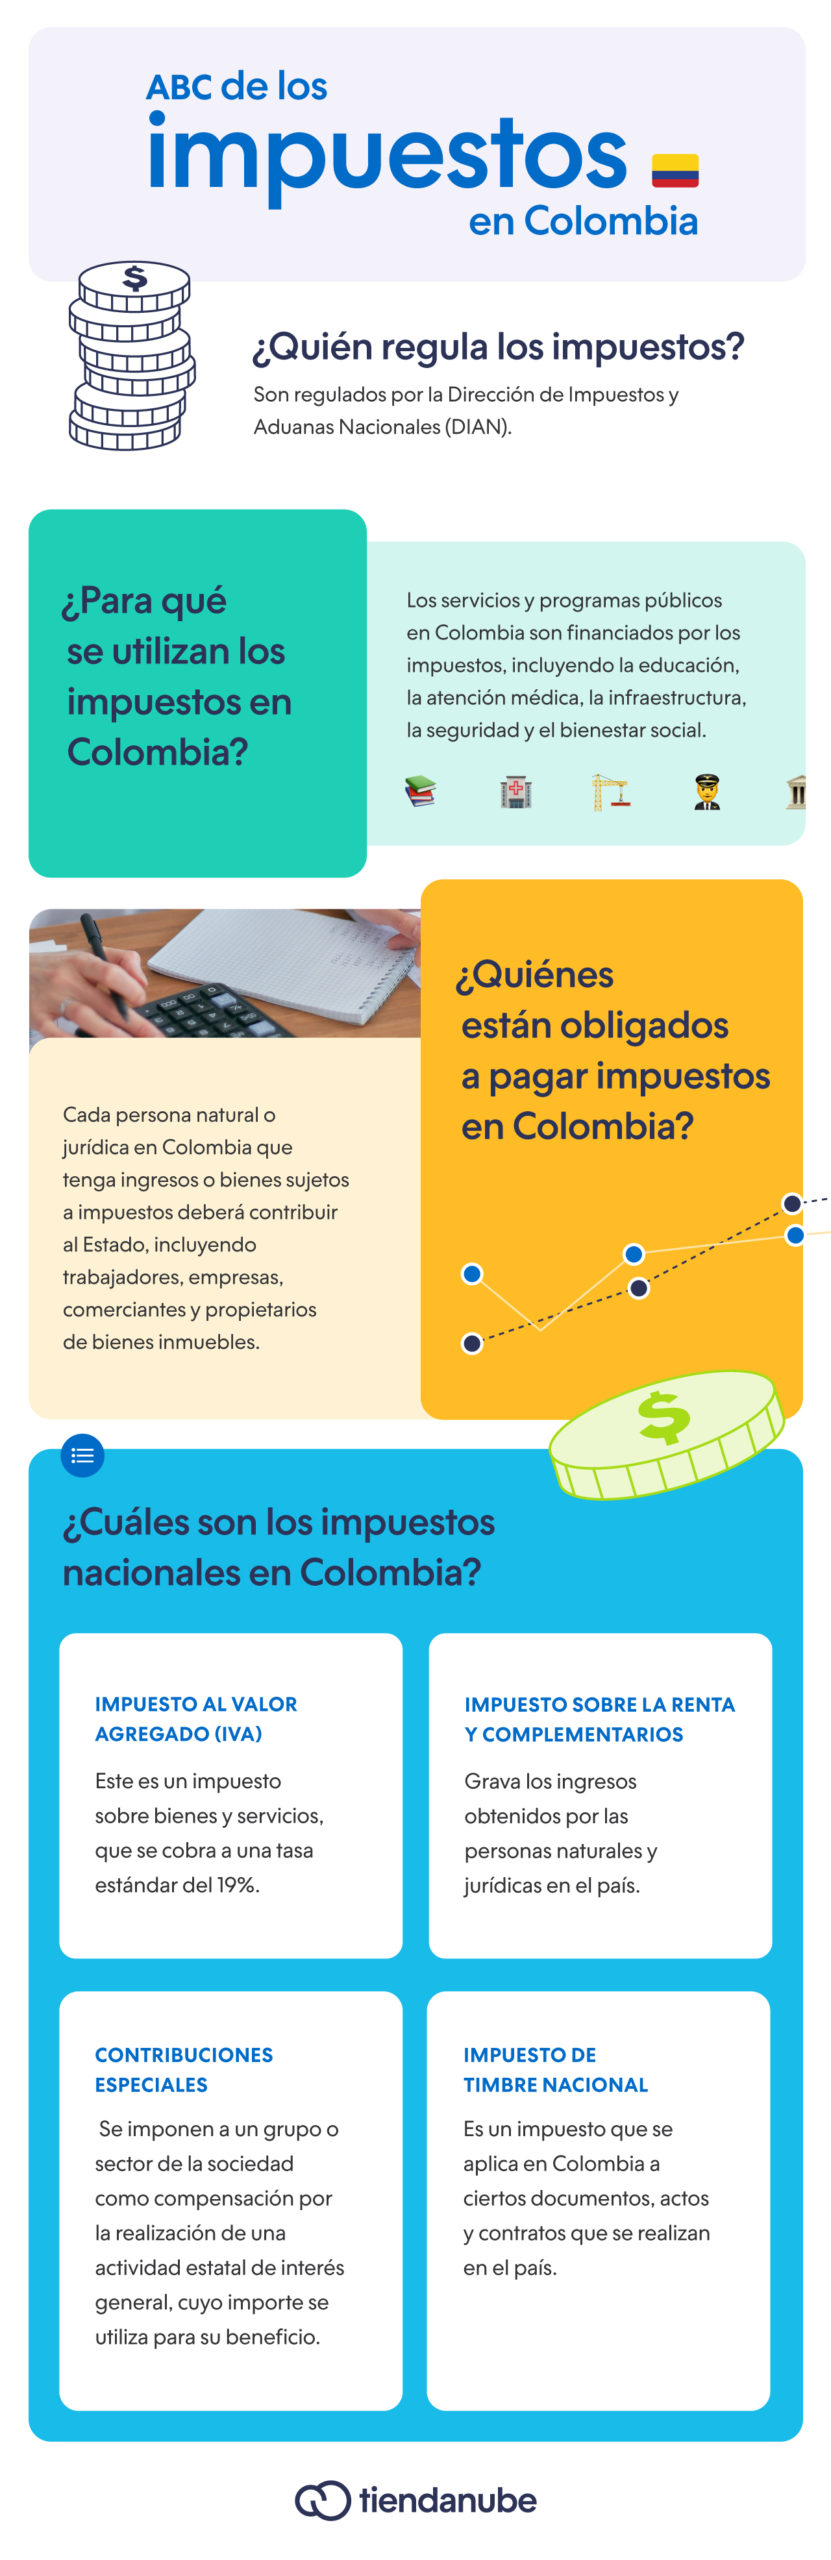 ¿Cuáles son los impuestos en Colombia y en qué consisten?